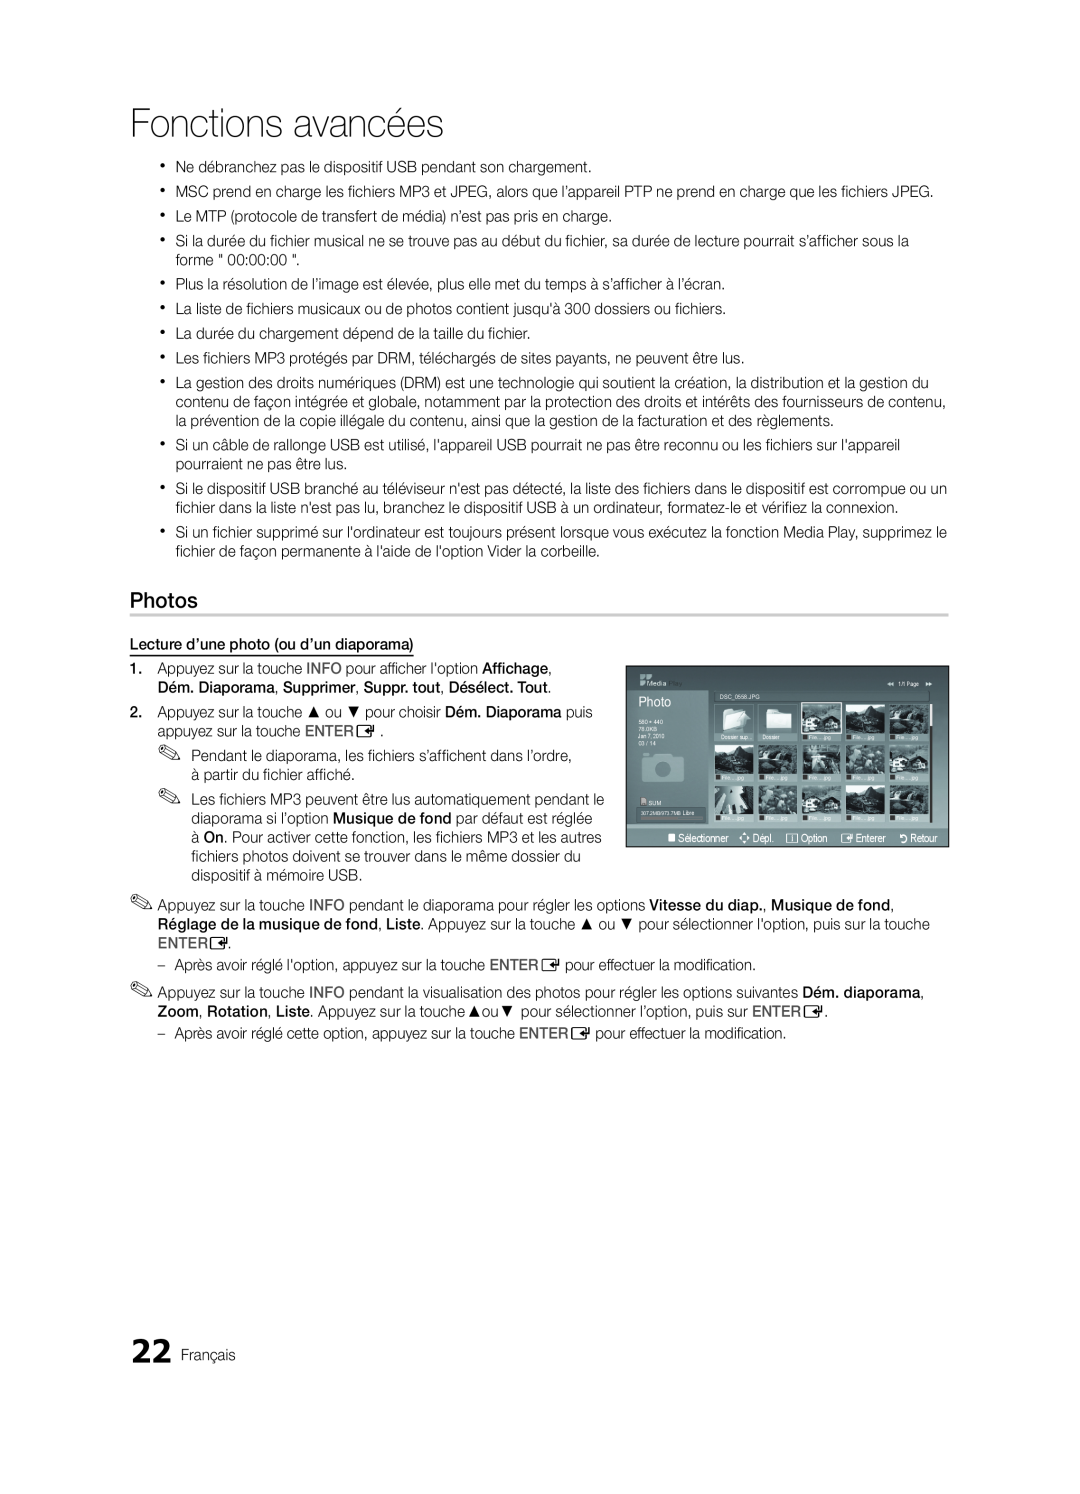 Samsung BN68-02620B-06 user manual Photos, Fonctions avancées, Entere, RRetour 